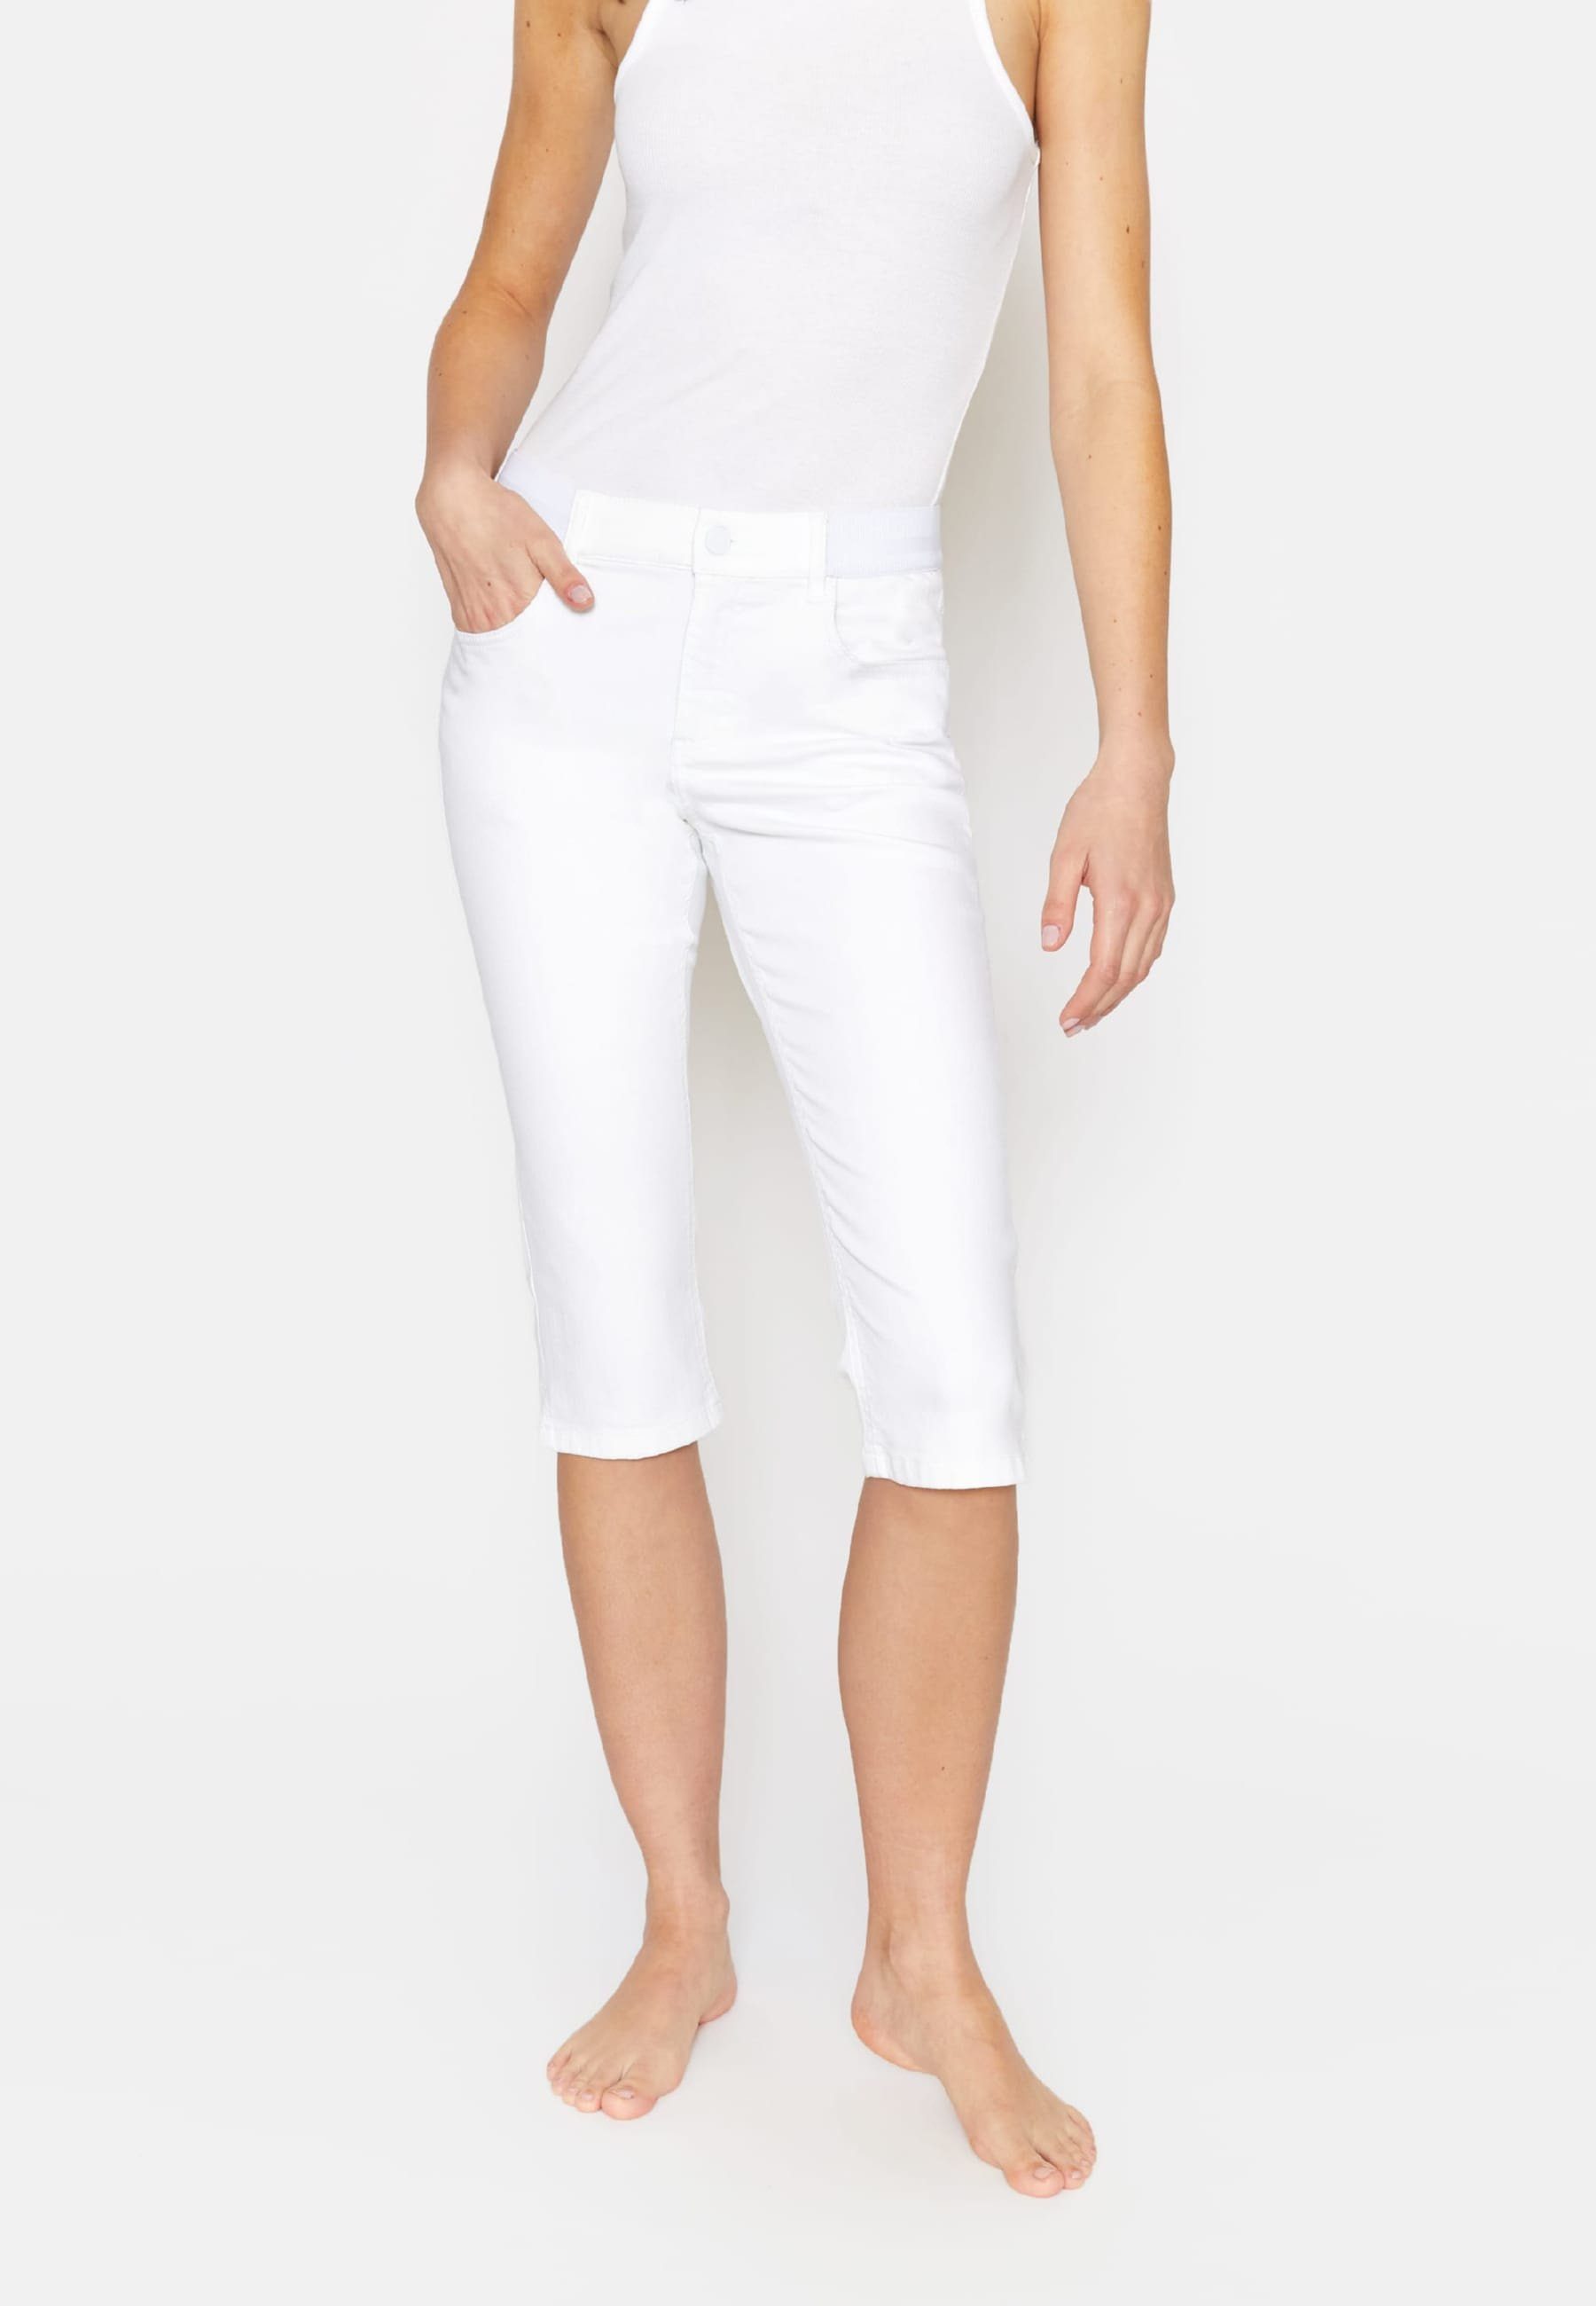 Jeans Capri ANGELS mit klassischem Design Dehnbund-Jeans weiß Onesize Kurze